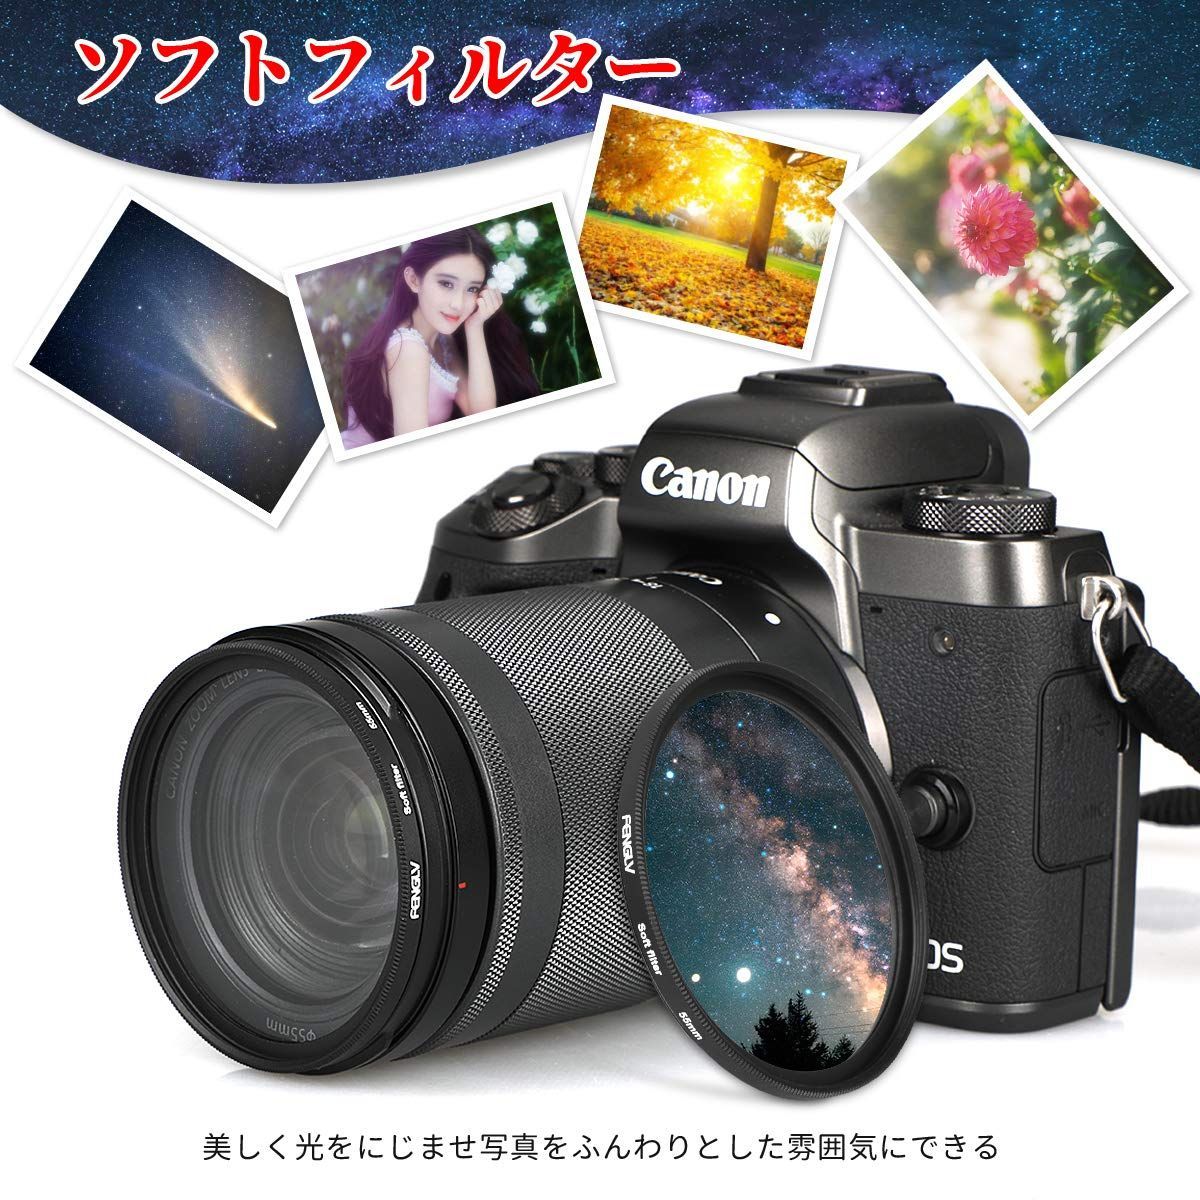 【在庫セール】ソフトフィルター レンズフィルター 強調 色彩効果用フィルター 52mm FENGLV